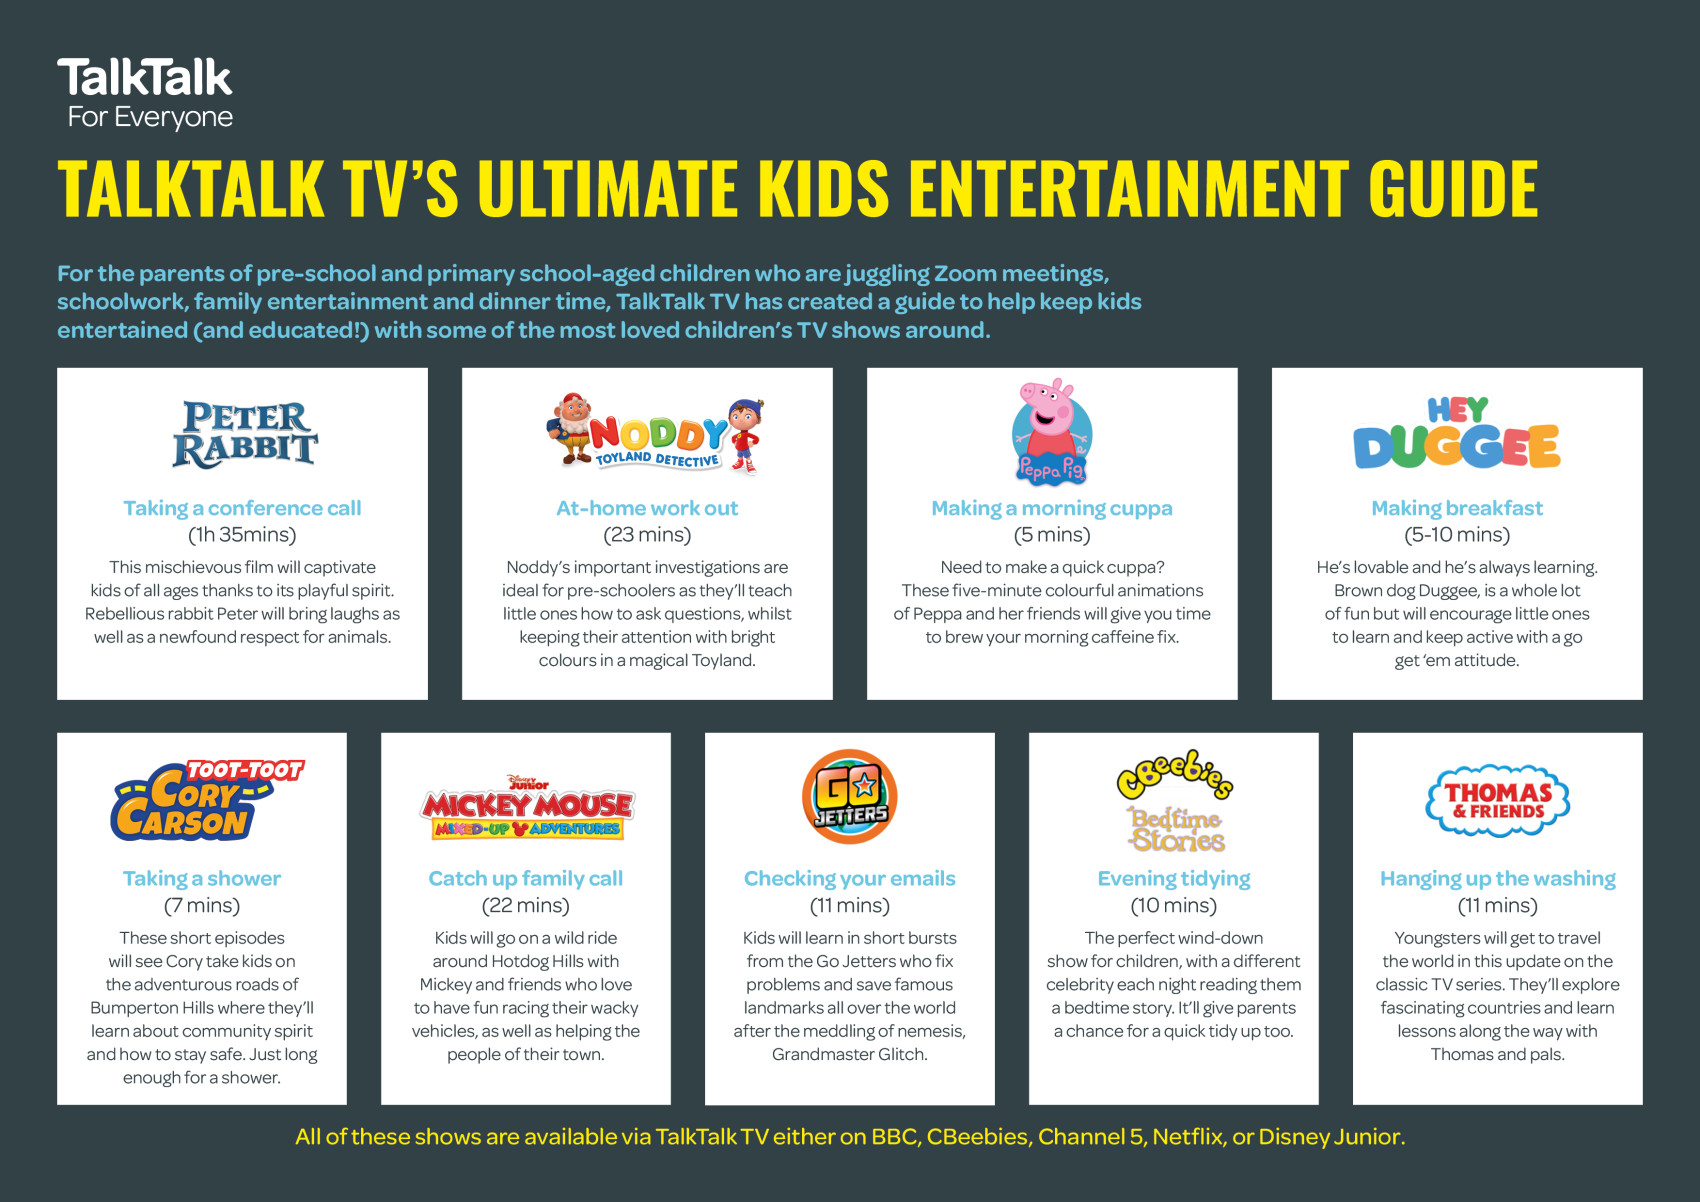 TalkTalk_TV_Ultimate_Kids_Entertainment_Guide.jpg